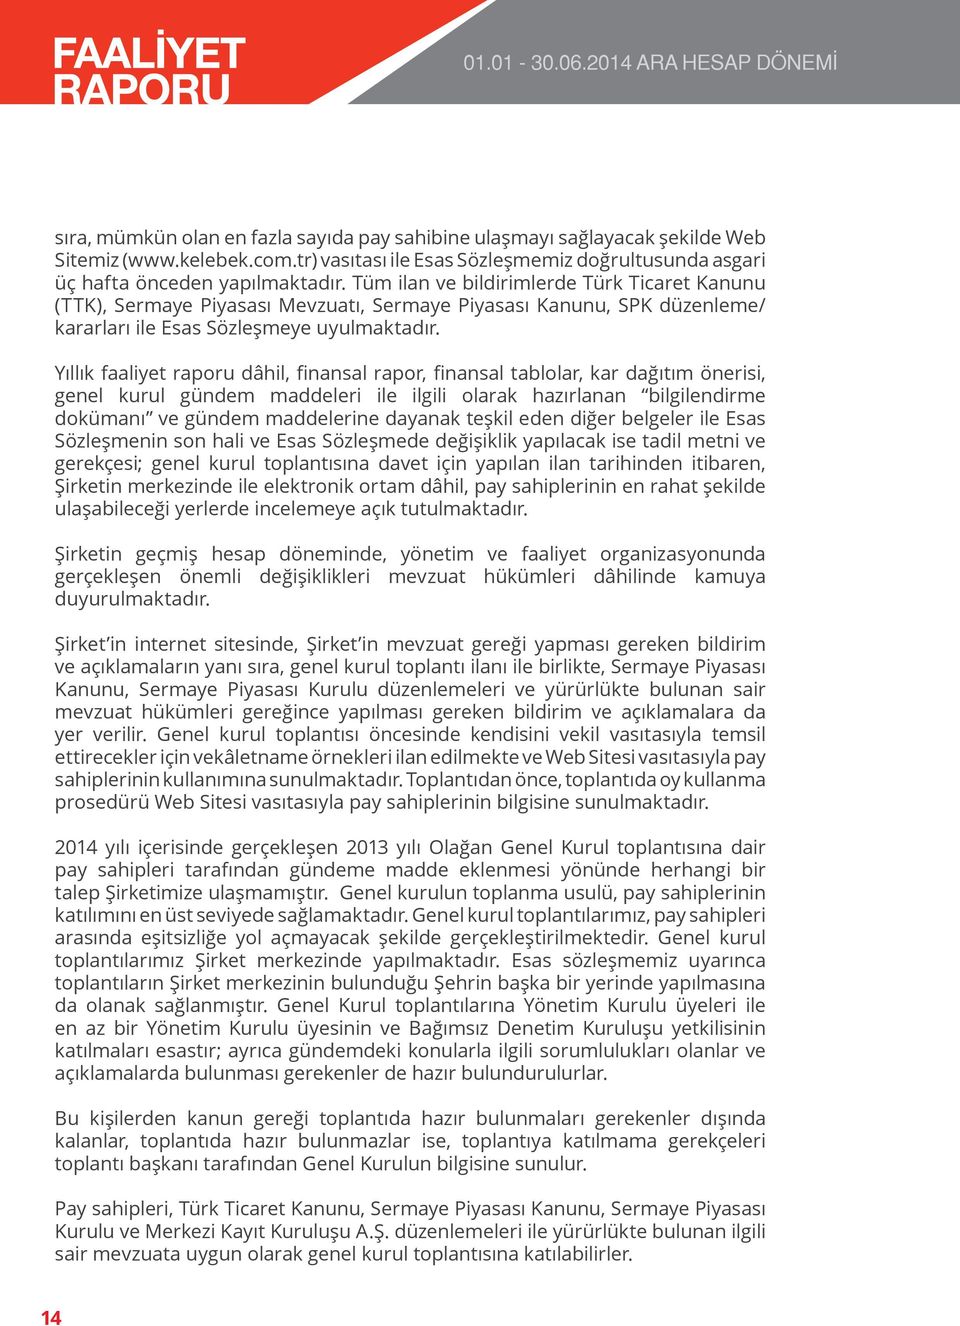 Tüm ilan ve bildirimlerde Türk Ticaret Kanunu (TTK), Sermaye Piyasası Mevzuatı, Sermaye Piyasası Kanunu, SPK düzenleme/ kararları ile Esas Sözleşmeye uyulmaktadır.